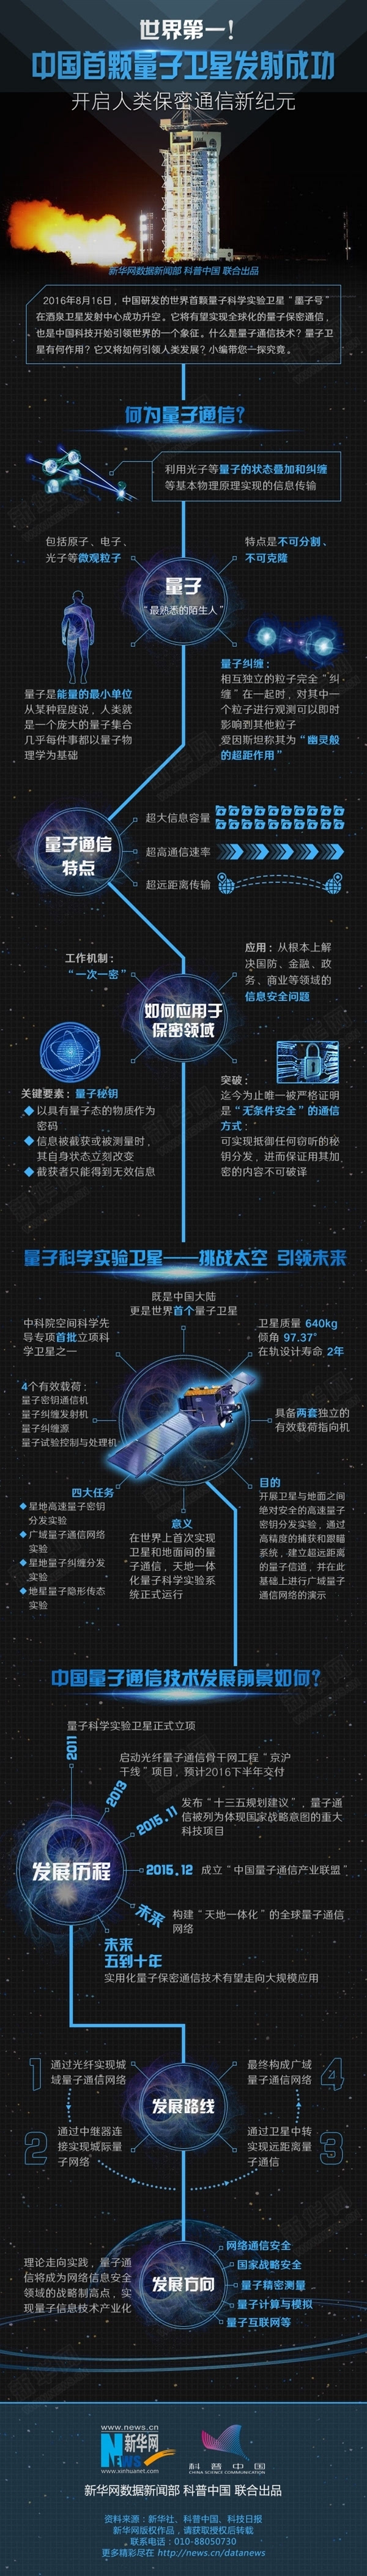 绝对安全!中国量子卫星墨子号成功传回数据